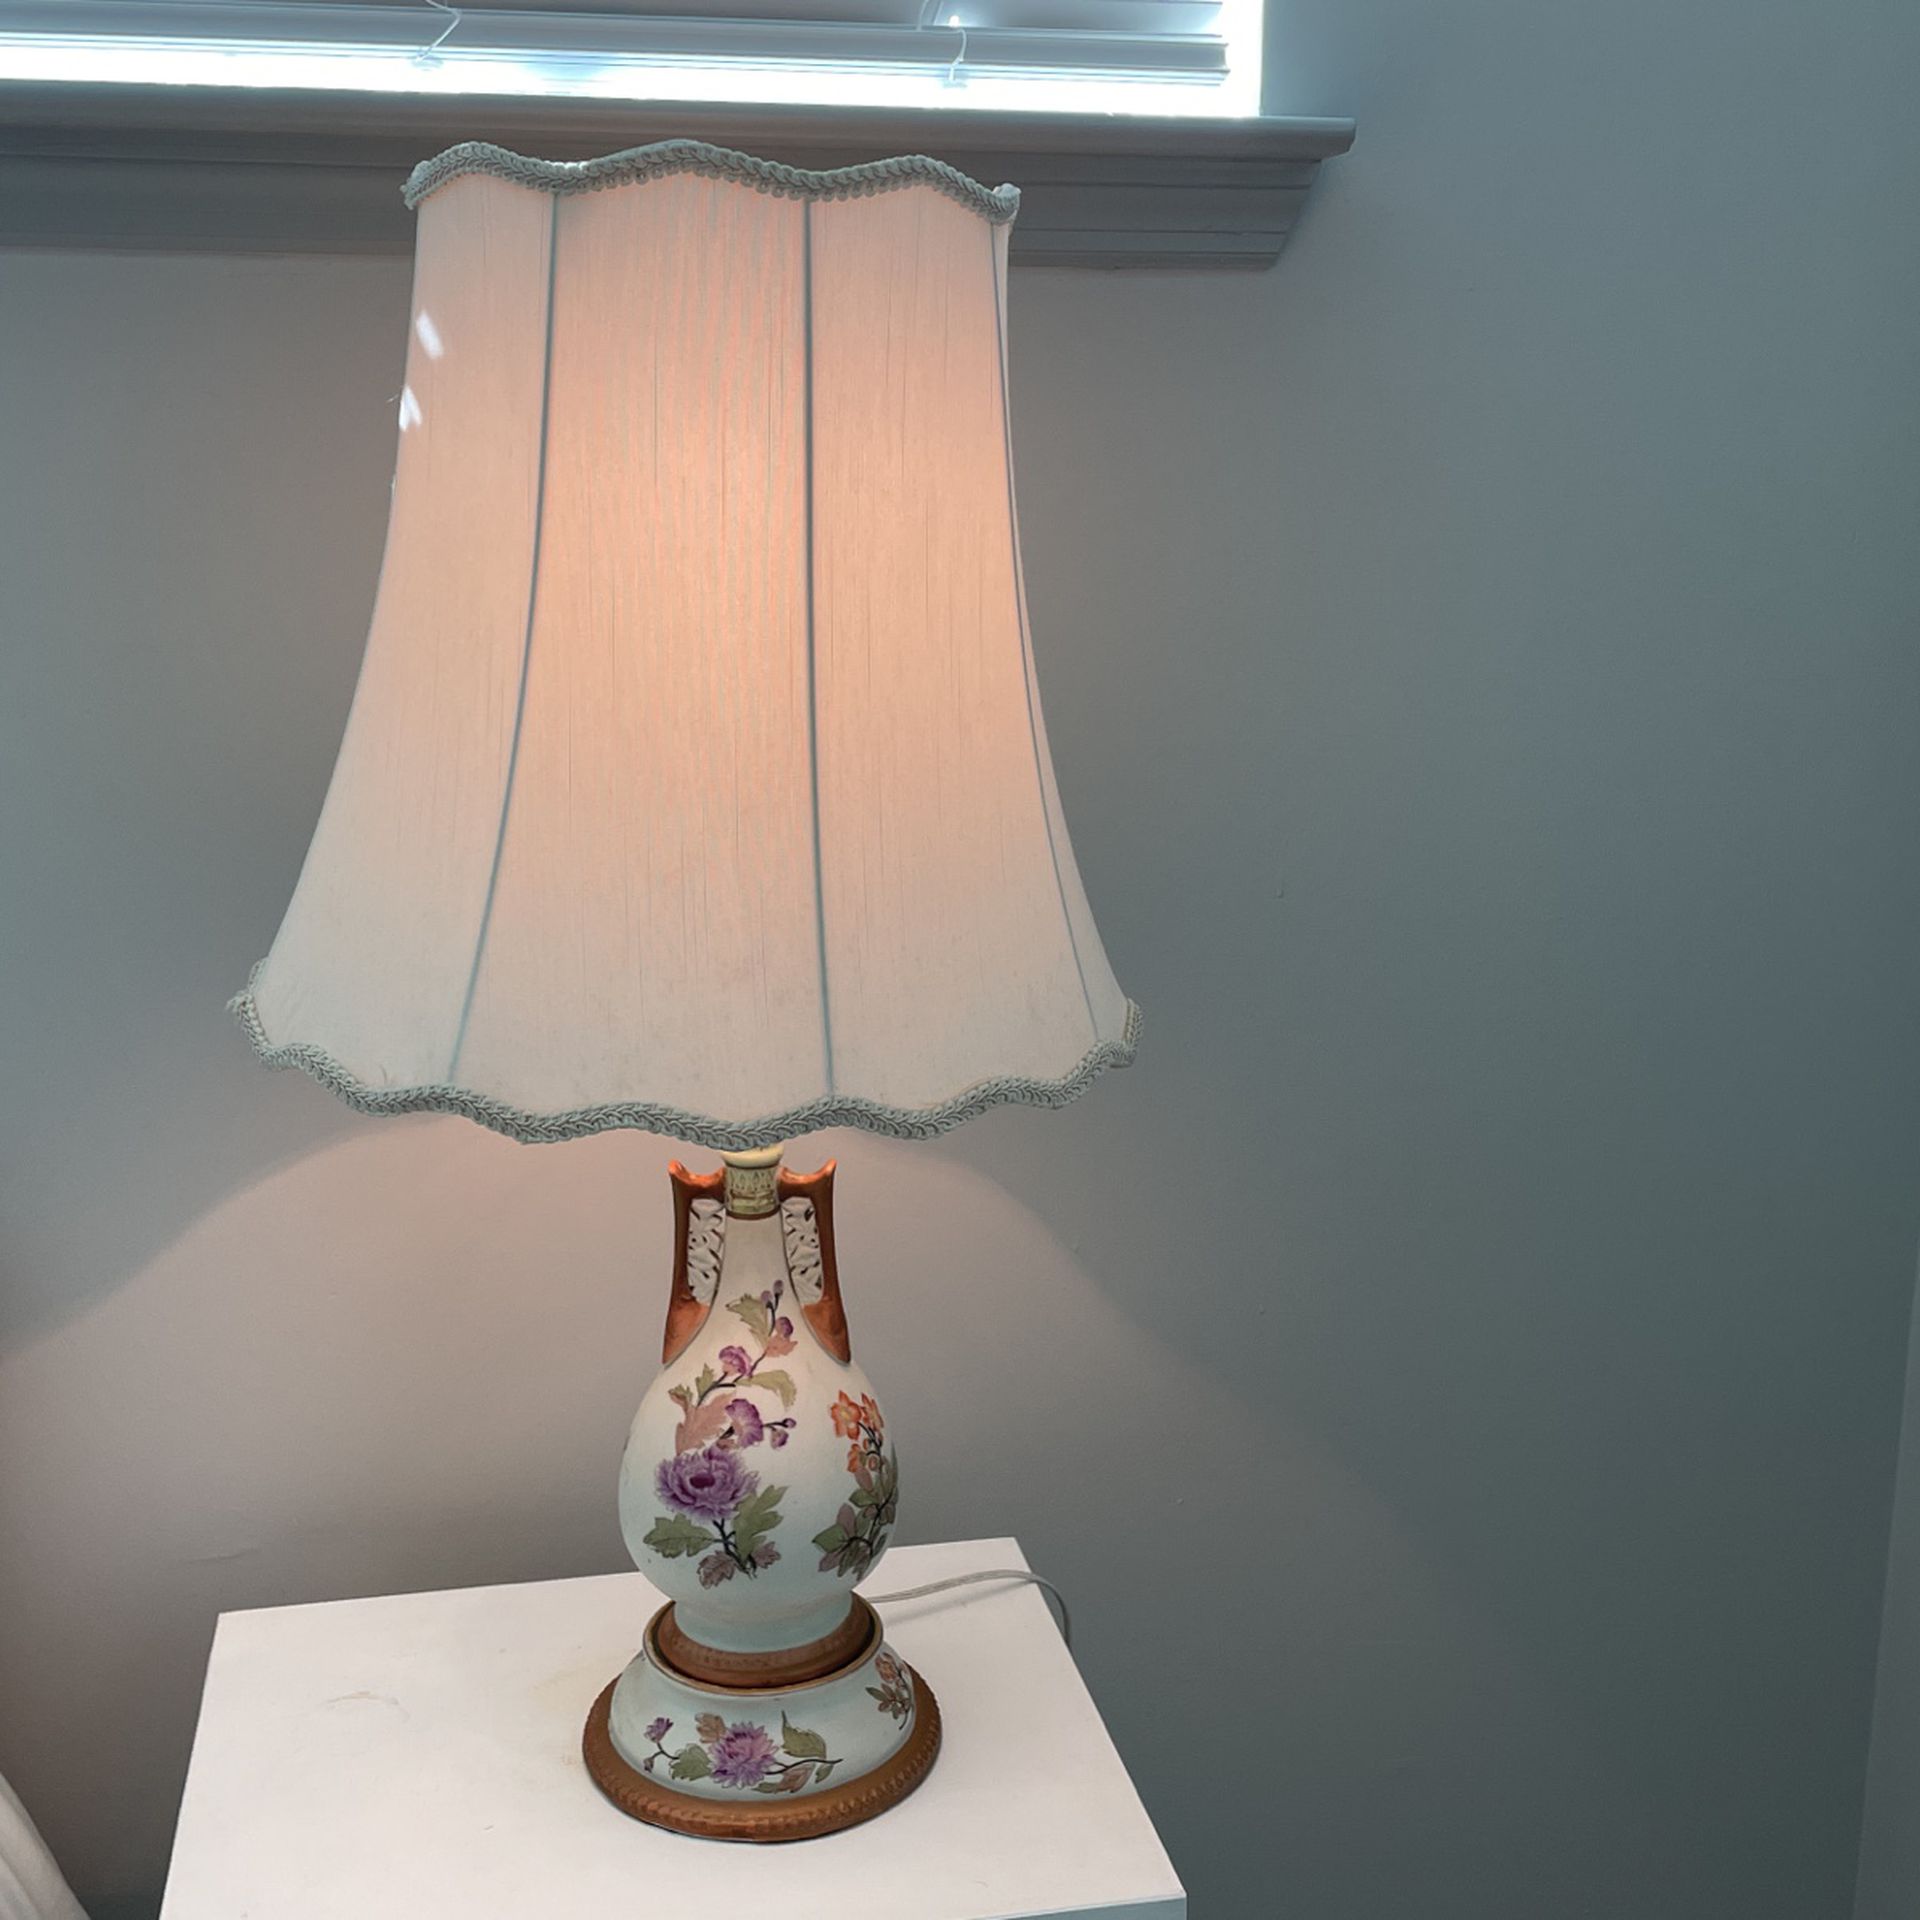 Antique bedside lamp